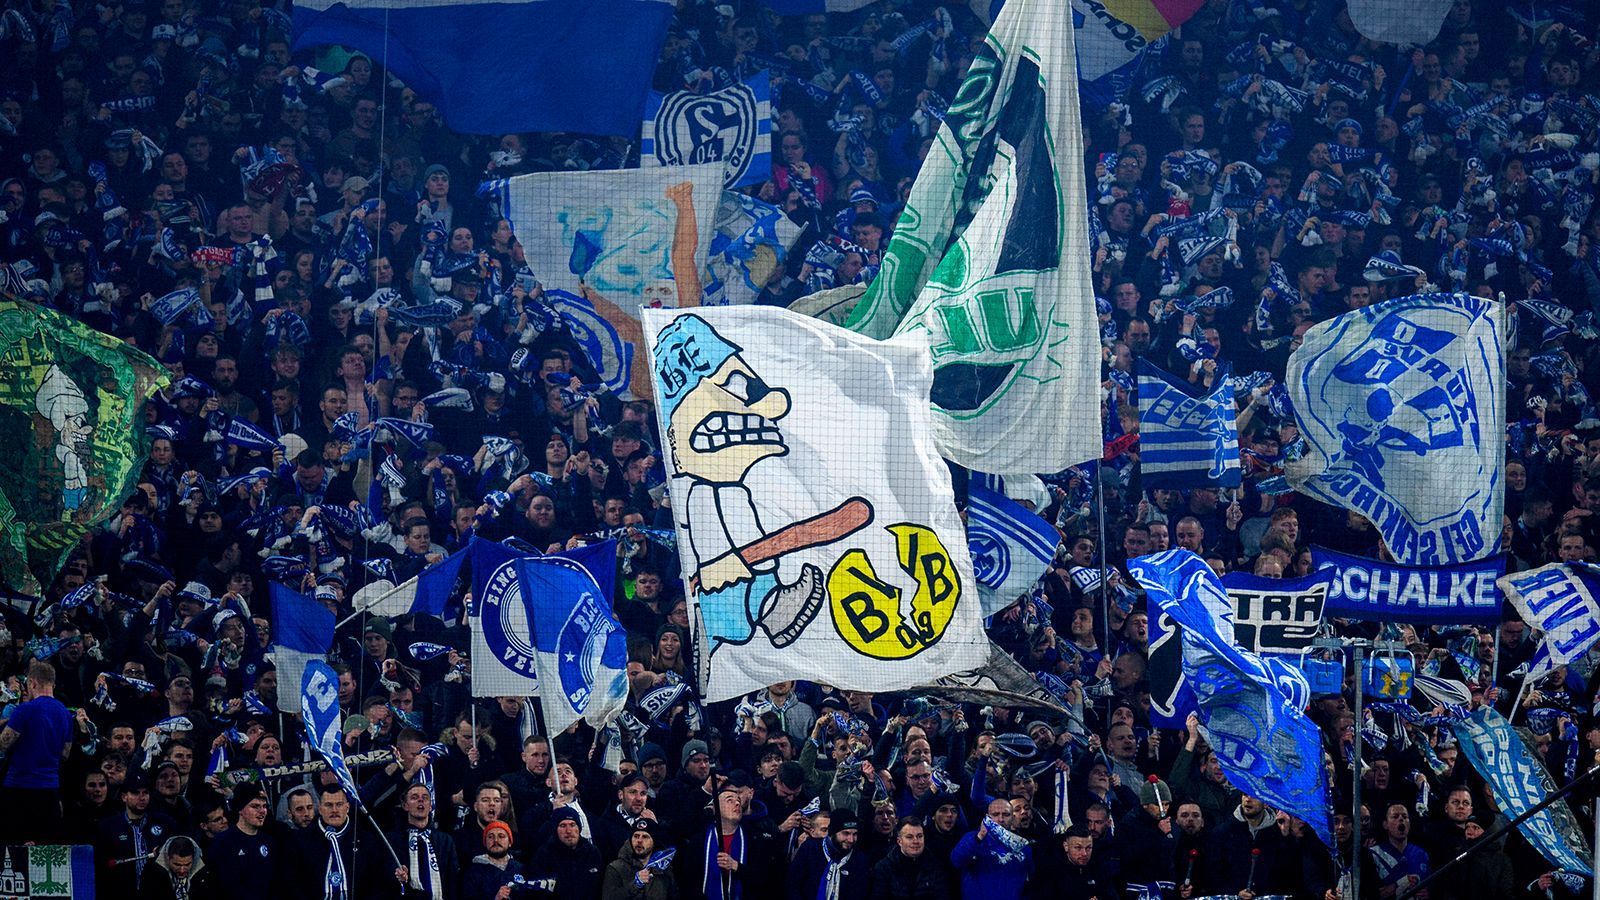 <strong>Platz 7: FC Schalke 04 </strong><br>
                Die Schalker Fanbase ist riesig, das bestätigen 174.000 Mitglieder. Trotz des Abstiegs in die 2. Bundesliga hat Schalke laut "Statista" noch einmal 10.000 Mitglieder mehr als zum Vorjahreszeitpunkt. Daran kann auch die eher unglücklich laufende aktuelle Saison nichts ändern.